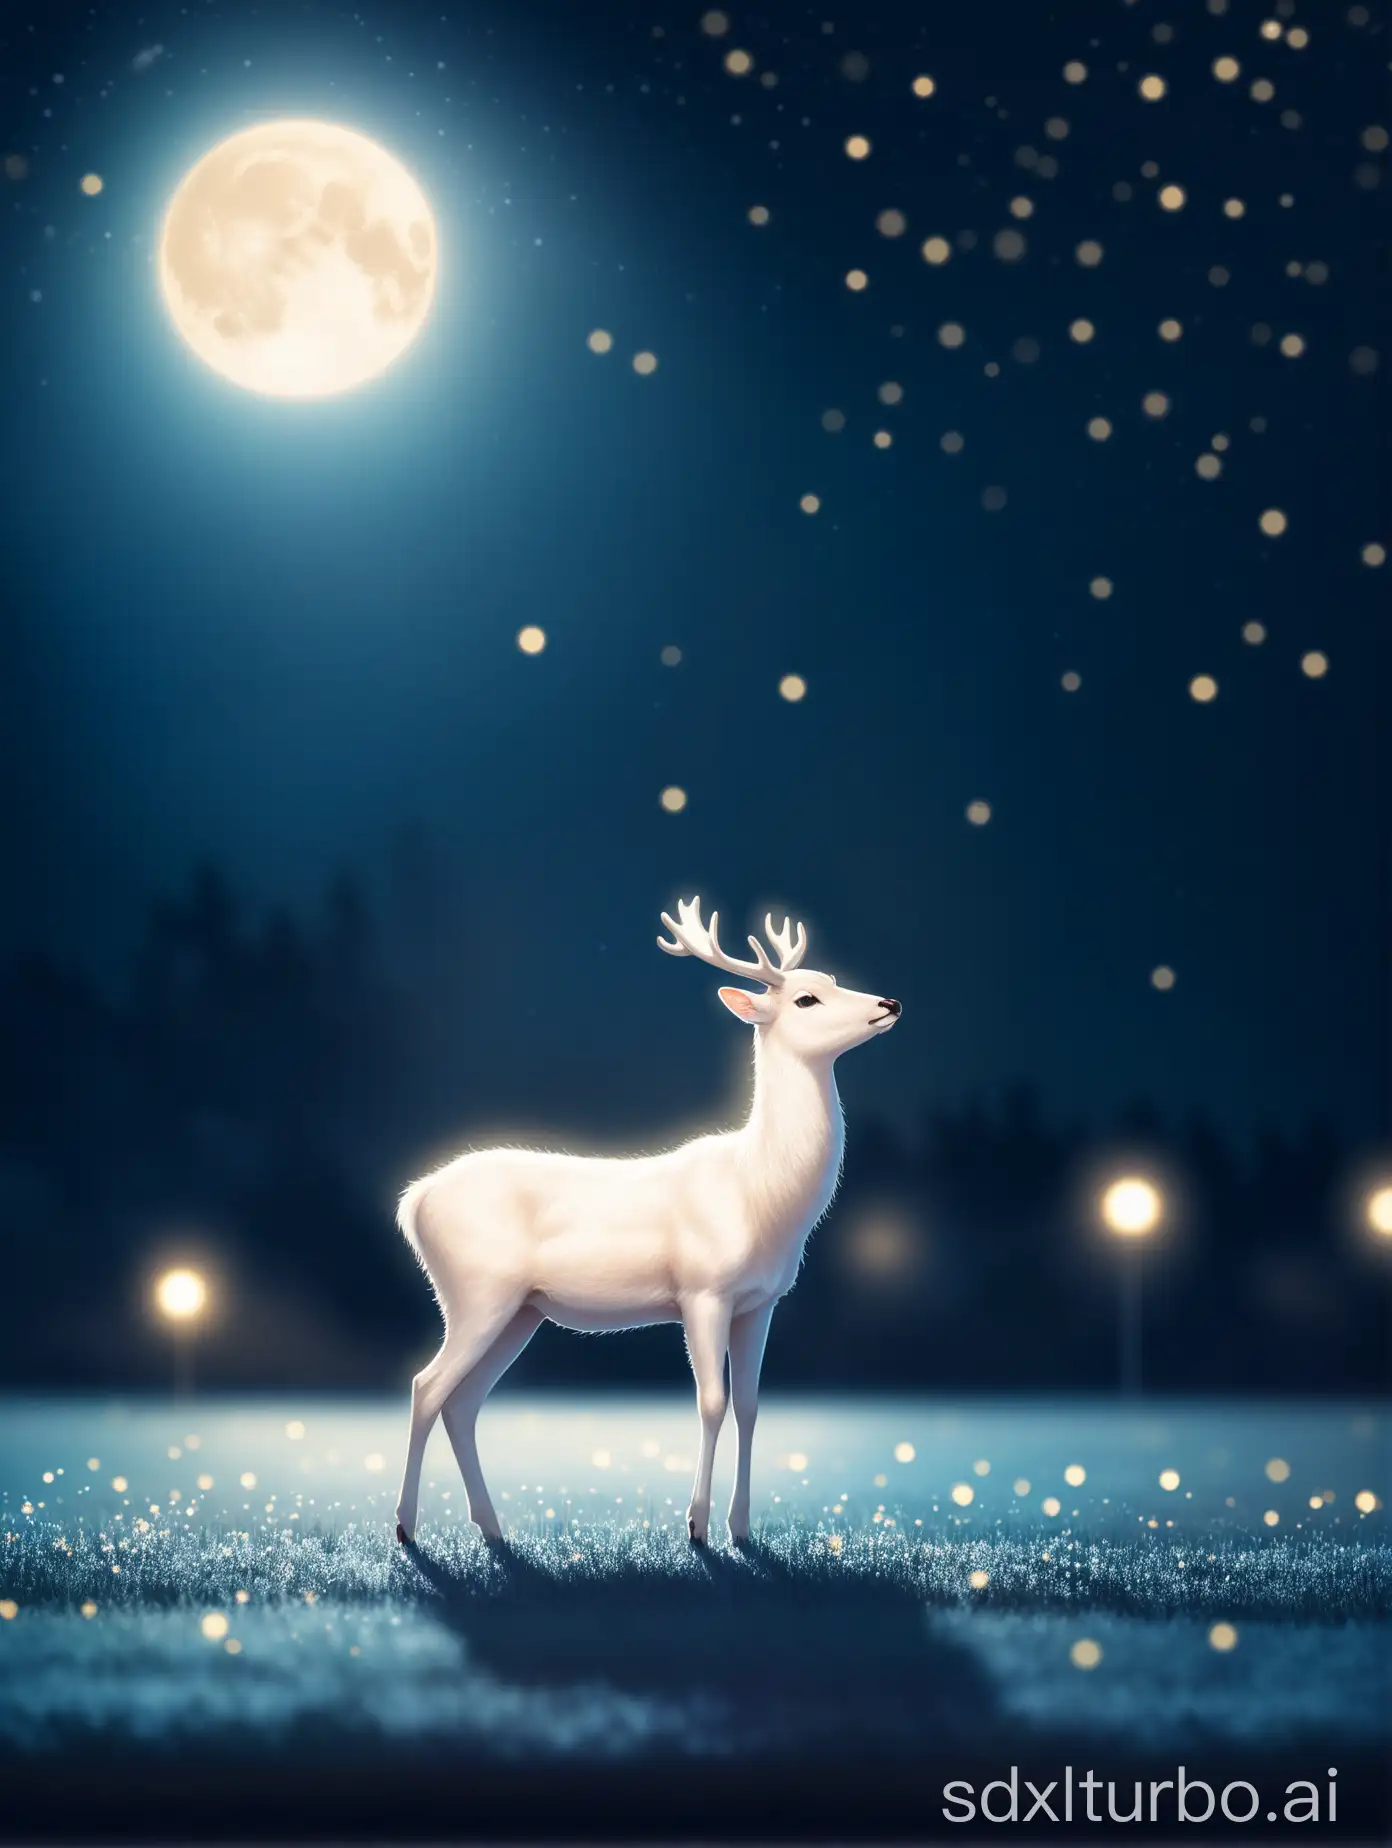 移轴镜头梦幻唯美月光下的白鹿的画面